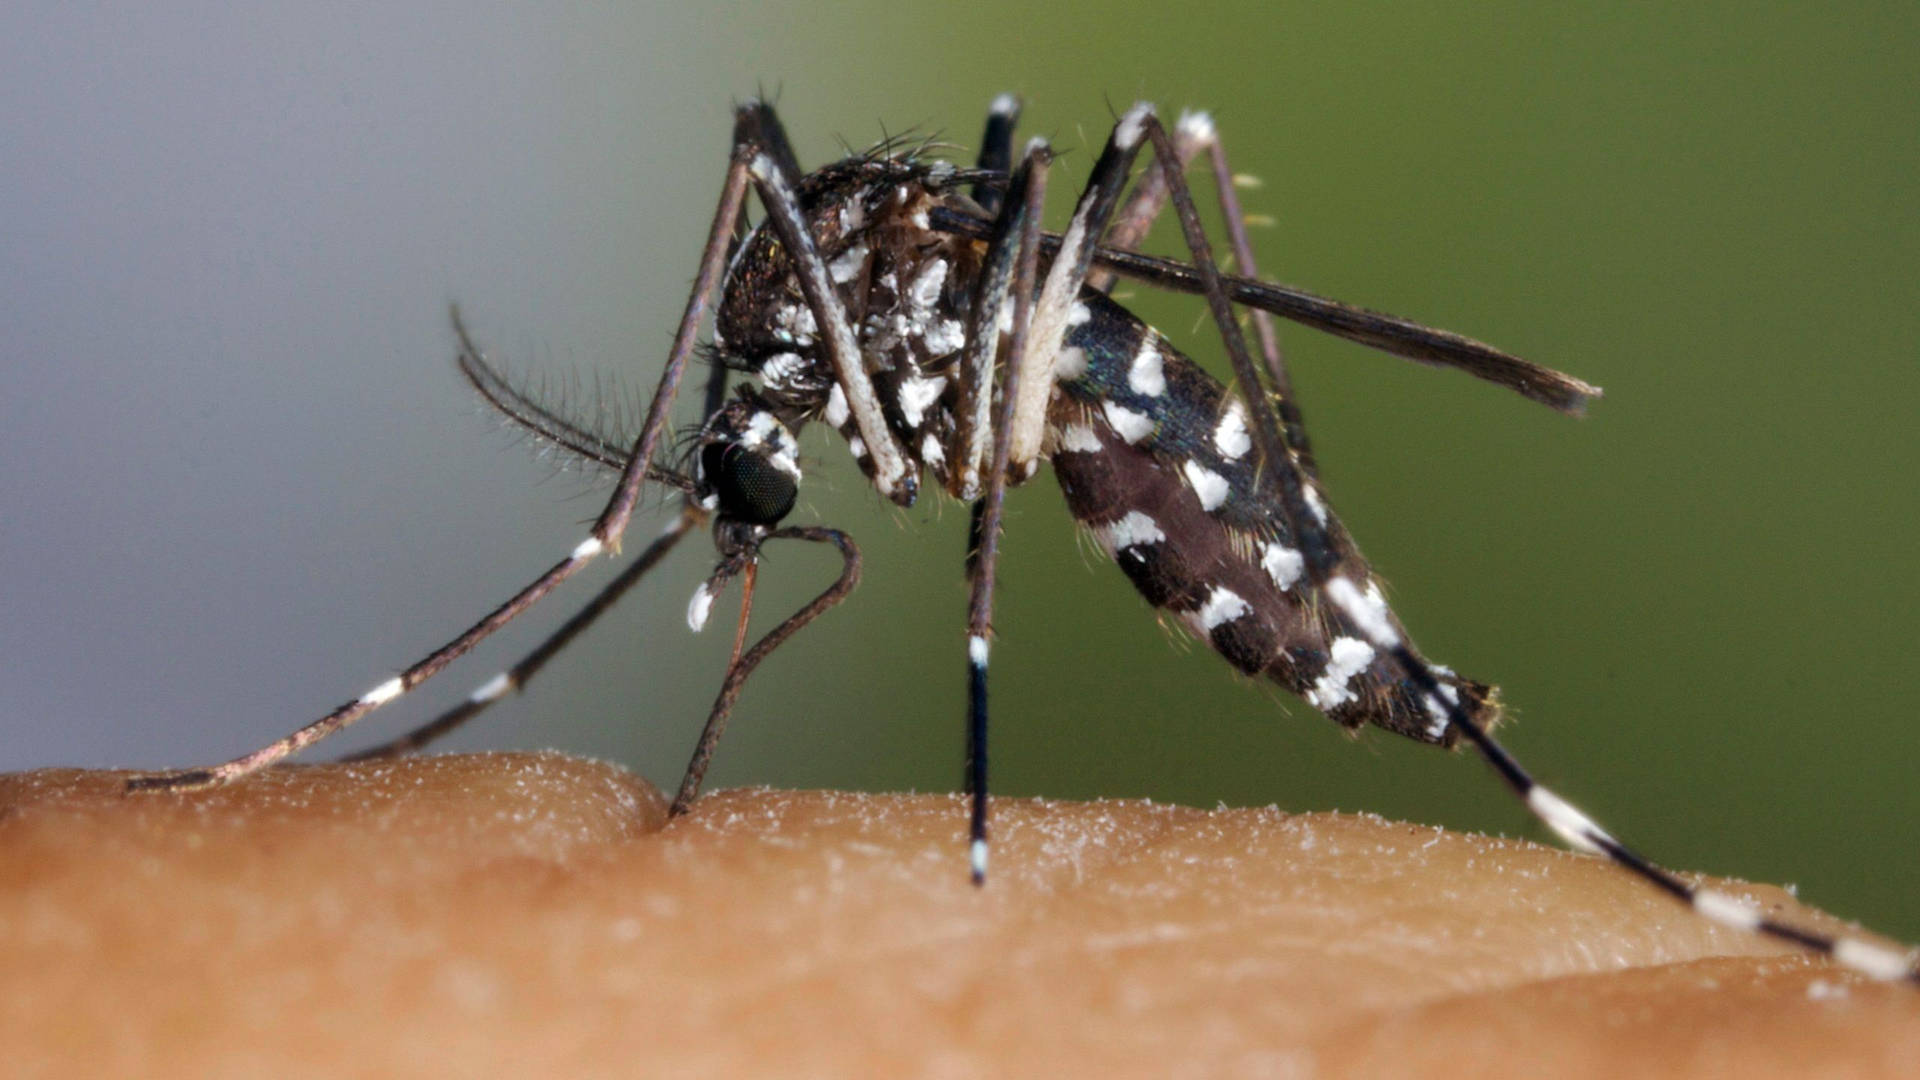 Asiantiger Mosquito - Zanzara Tigre Asiatica Sfondo